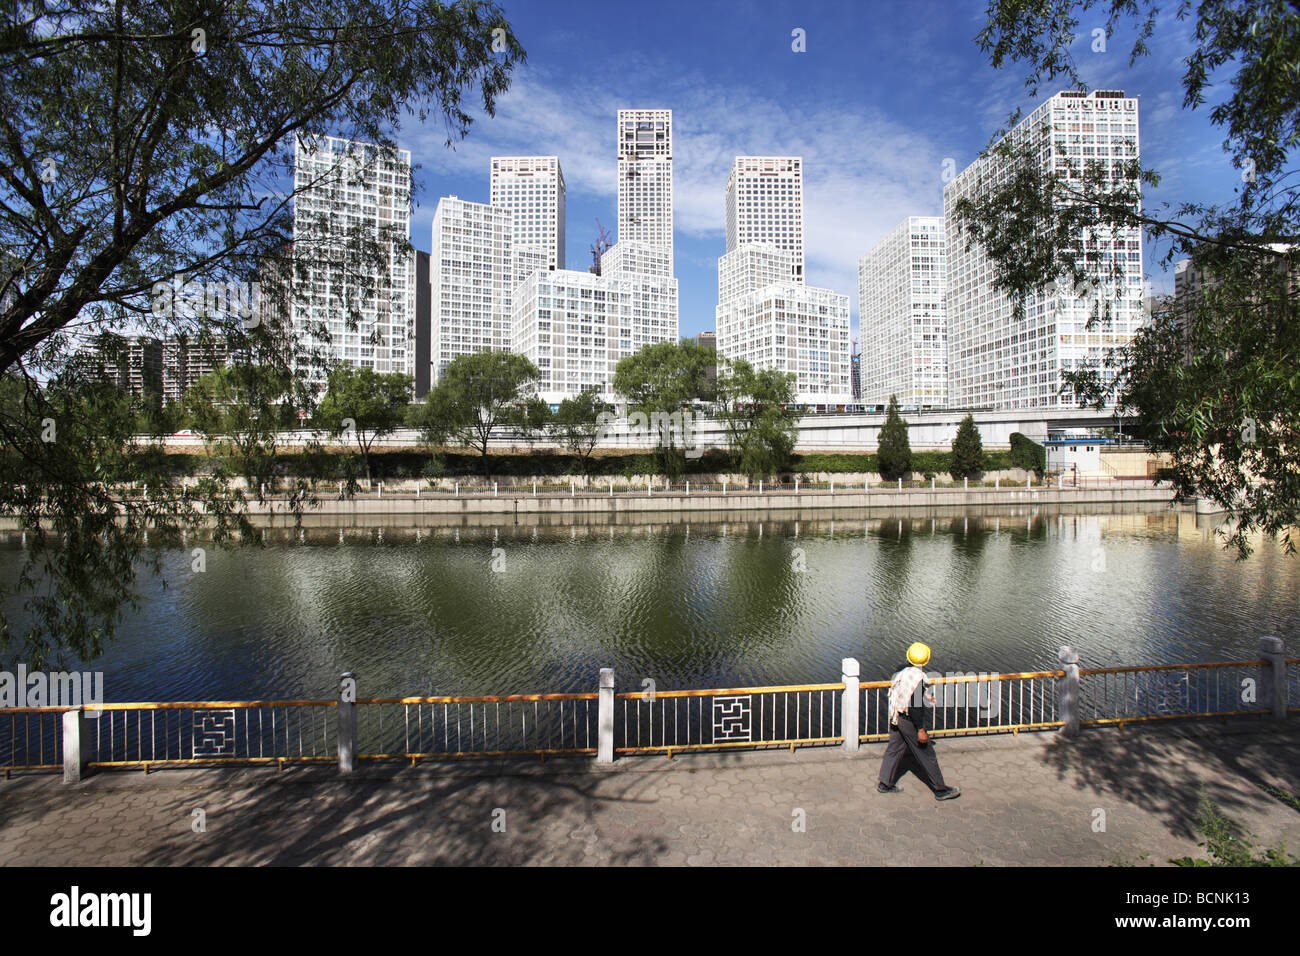 SOHO Jianwai propriété commerciale du complexe de l'autre côté de la rivière, Beijing, Chine Banque D'Images